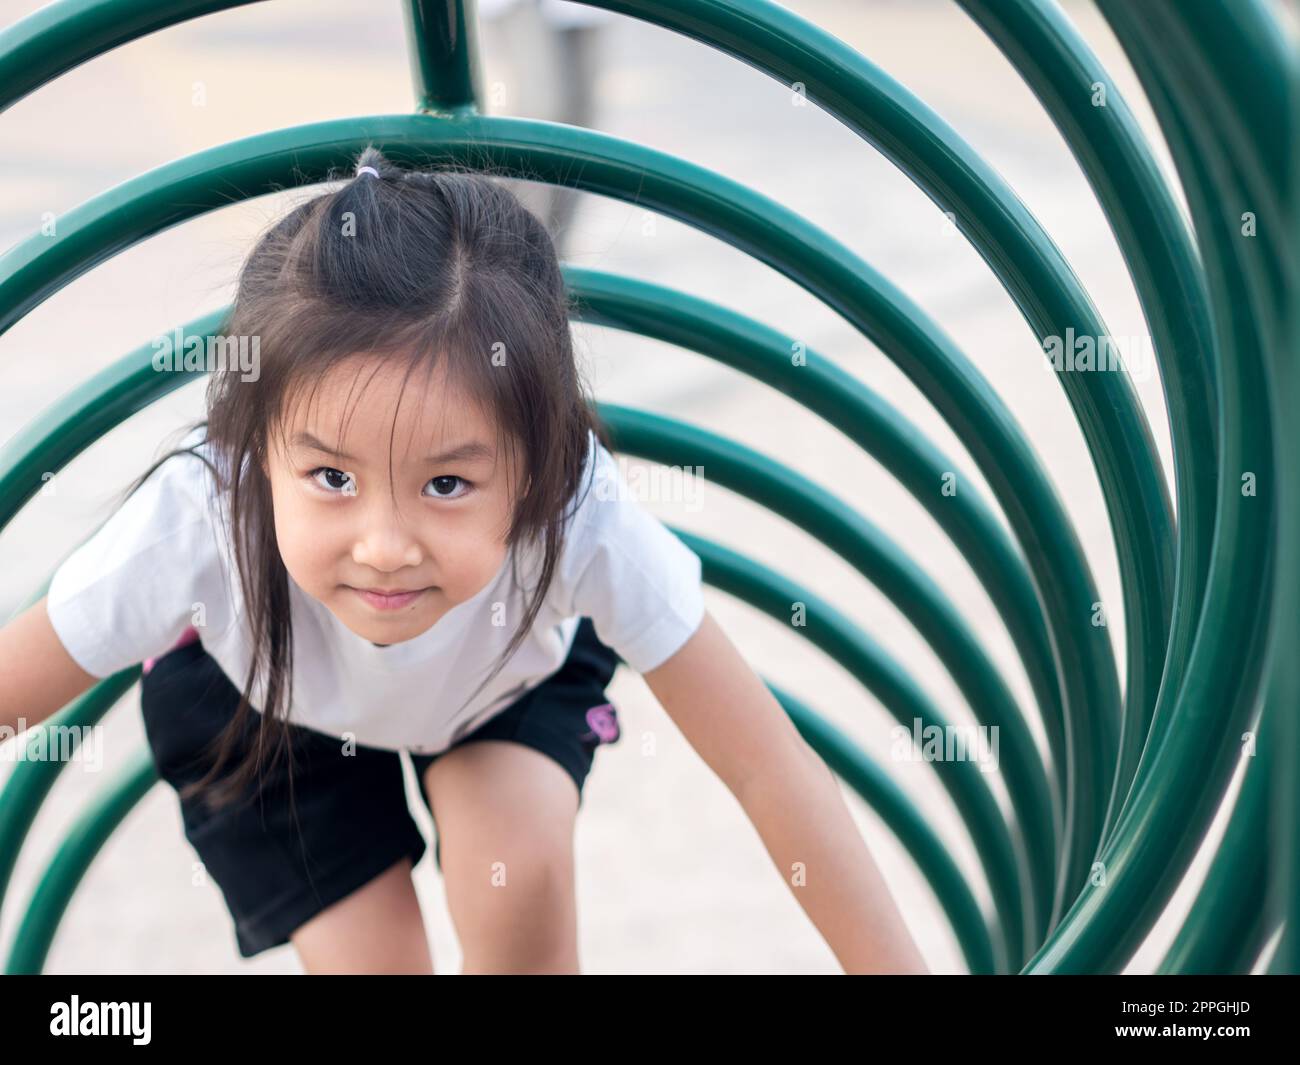 Happy kid, asian baby child playing on playground, climb the playground equipment, circle shape, white T shirt Stock Photo